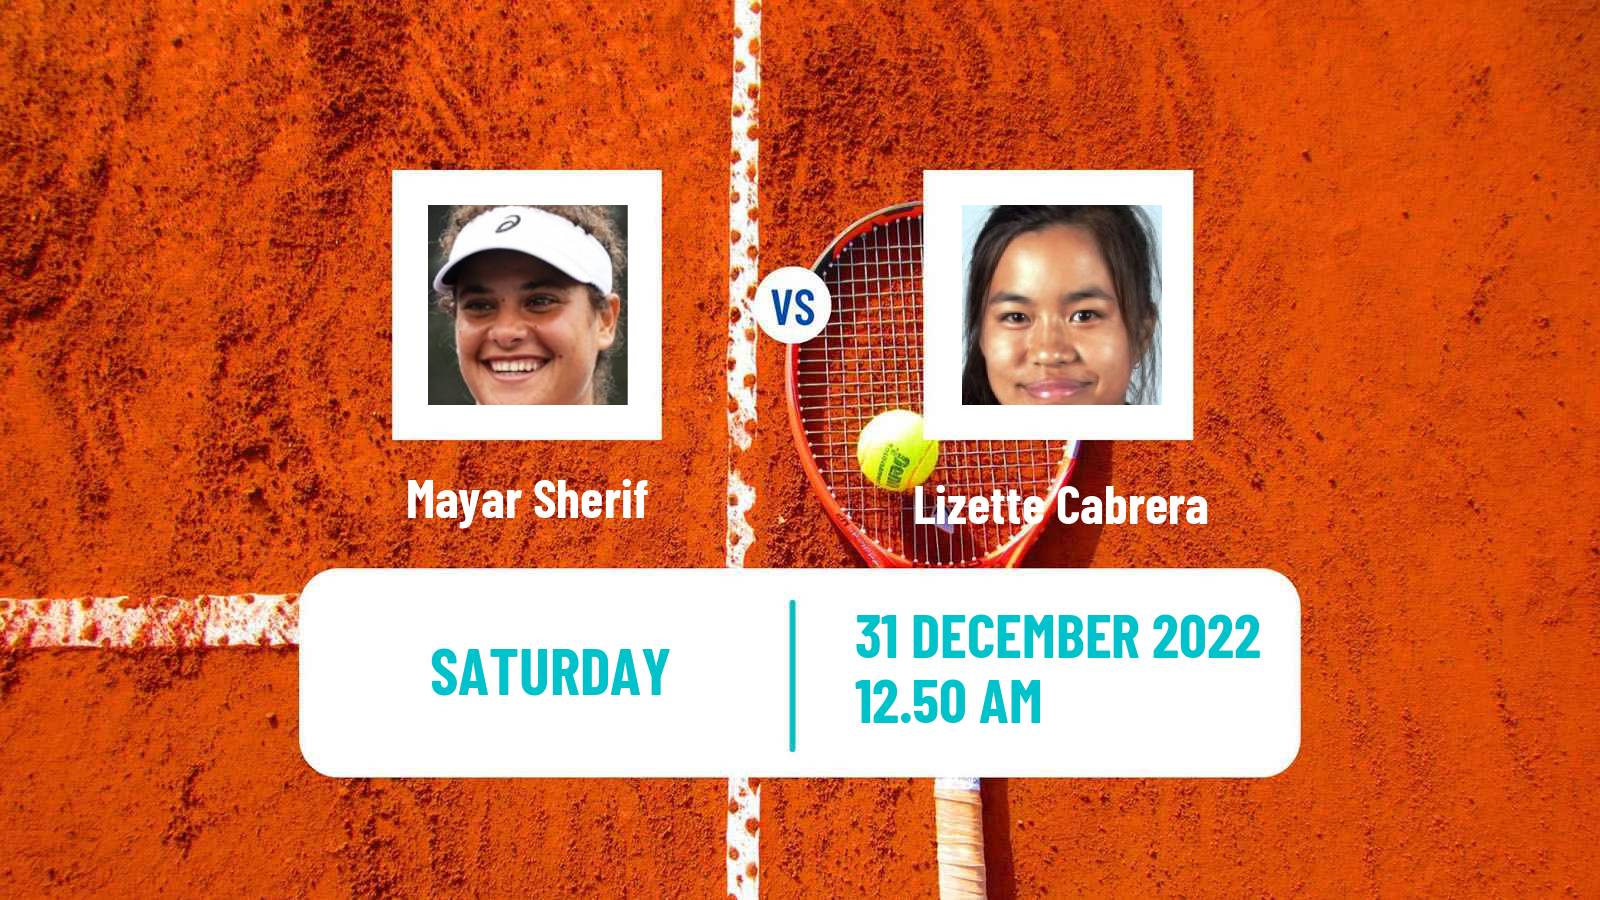 Tennis WTA Adelaide Mayar Sherif - Lizette Cabrera